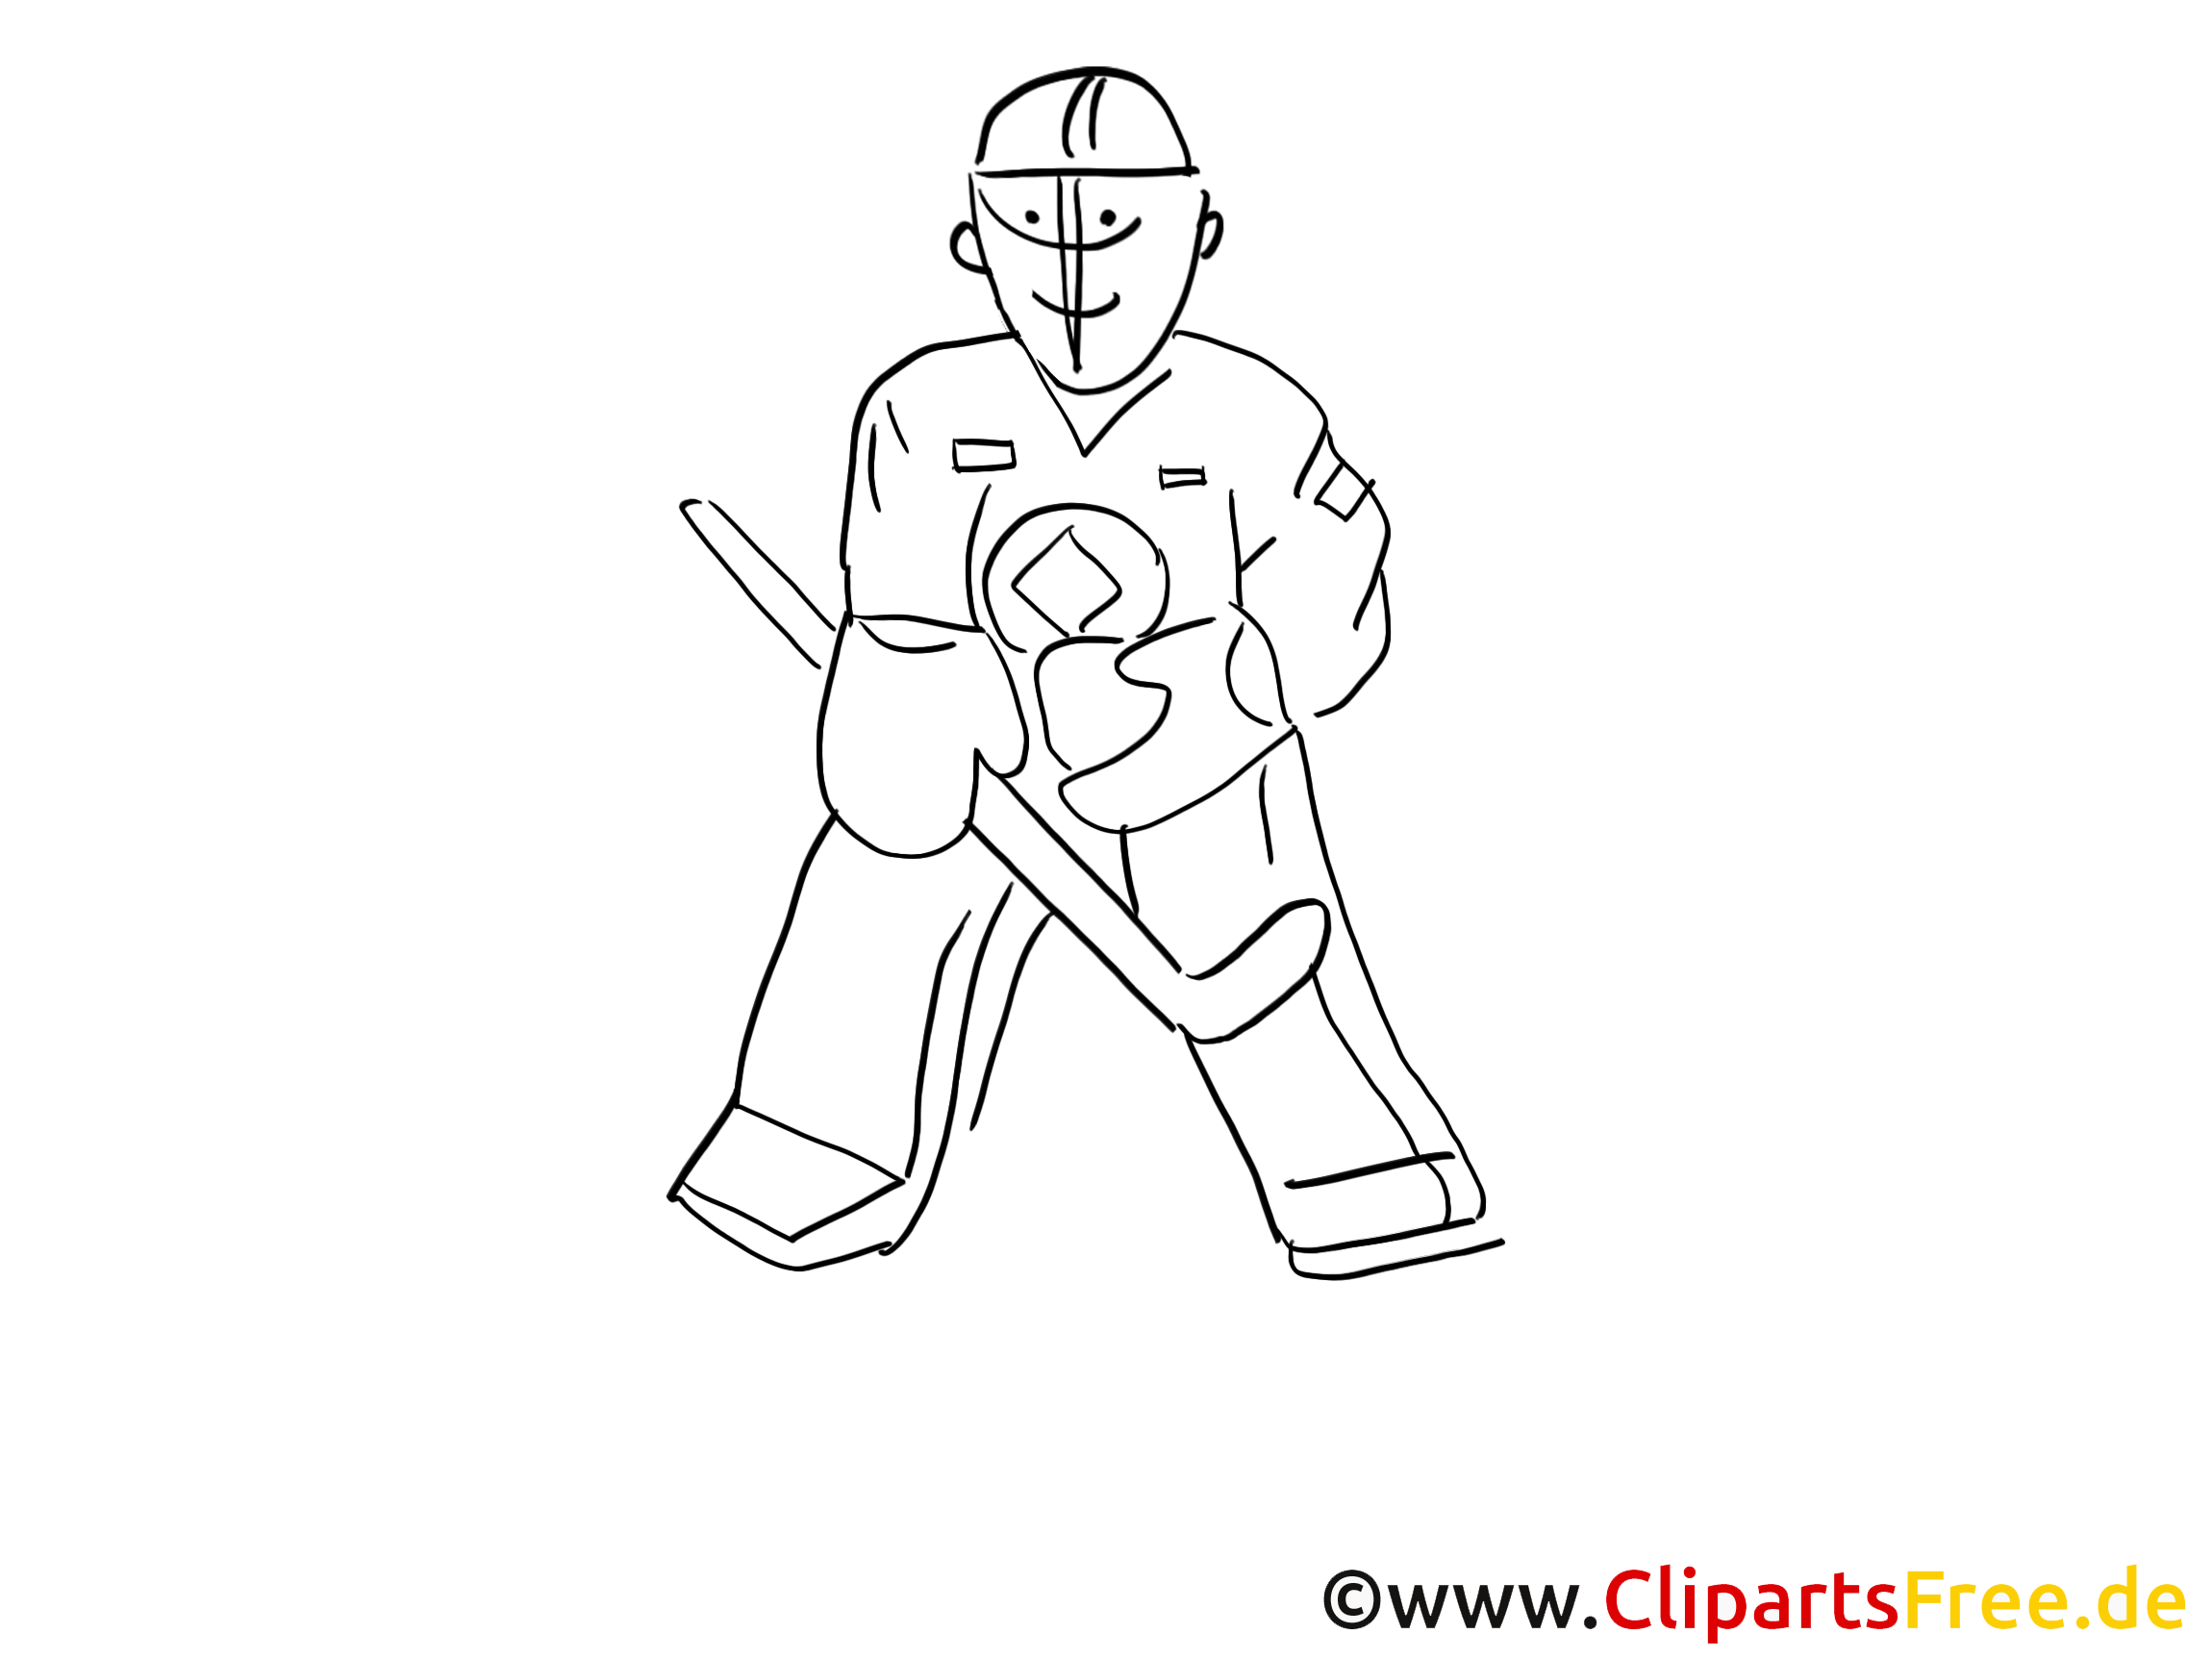 Gardien illustration – Hockey à colorier